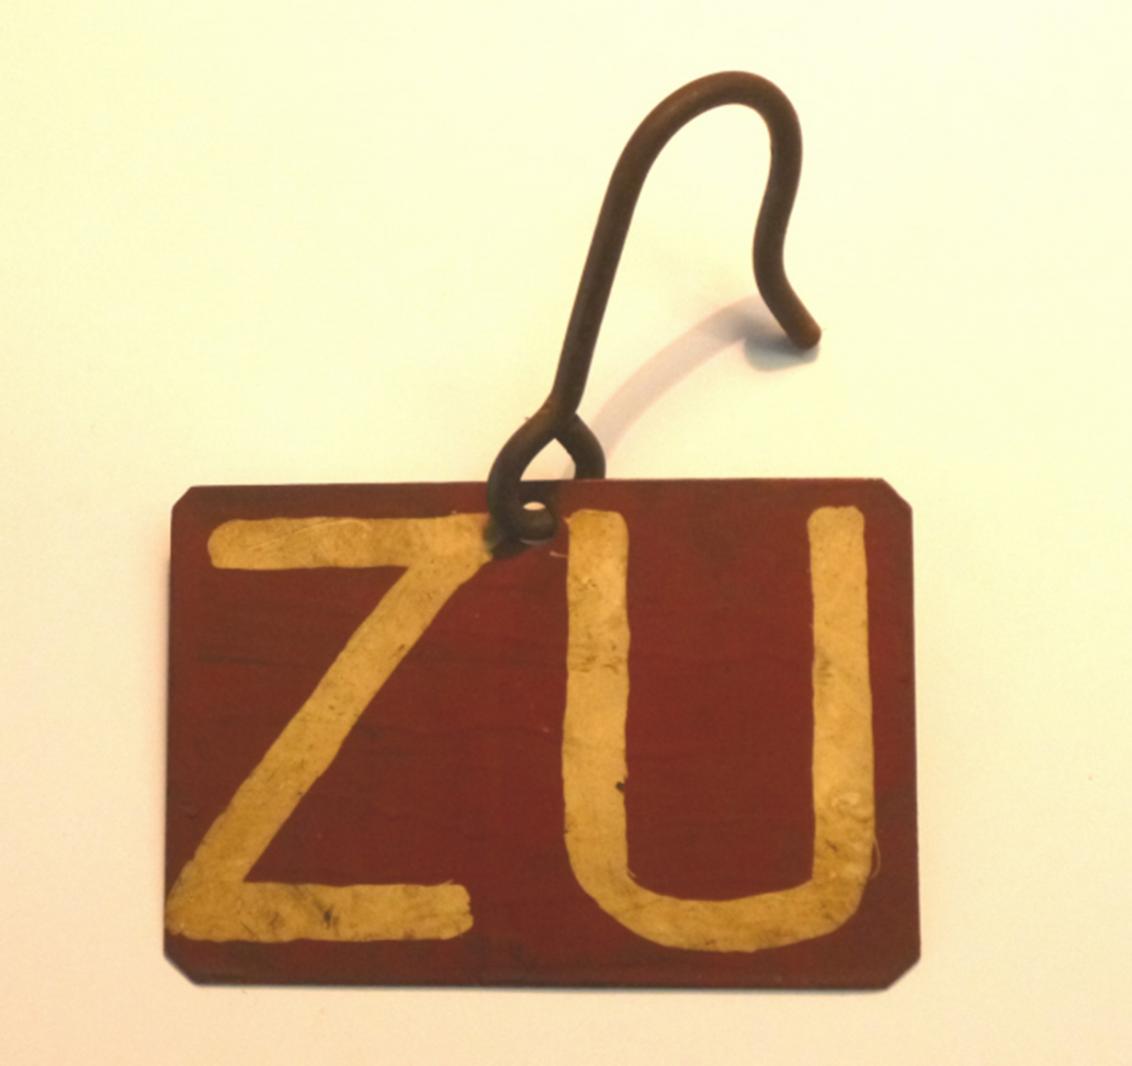 Braunrot in mehreren Schichten lackiertes Metallschild mit der Aufschrift "ZU". Die Ecken des rechteckigen Metallplatte sind abgeschnitten.